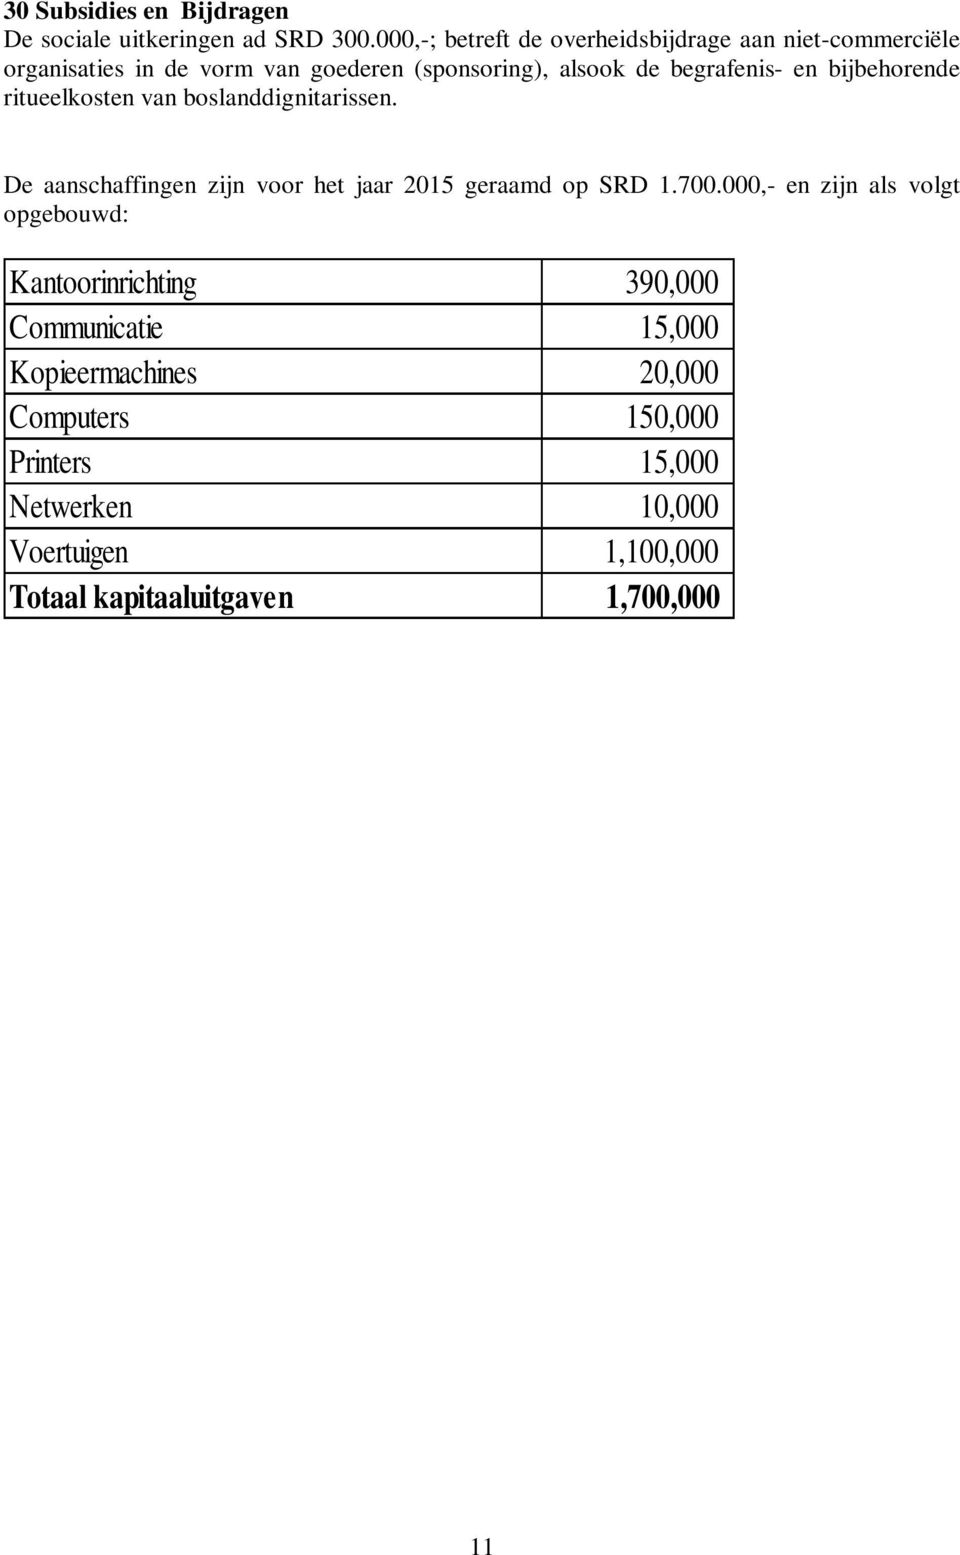 en bijbehorende ritueelkosten van boslanddignitarissen. De aanschaffingen zijn voor het jaar 2015 geraamd op SRD 1.700.